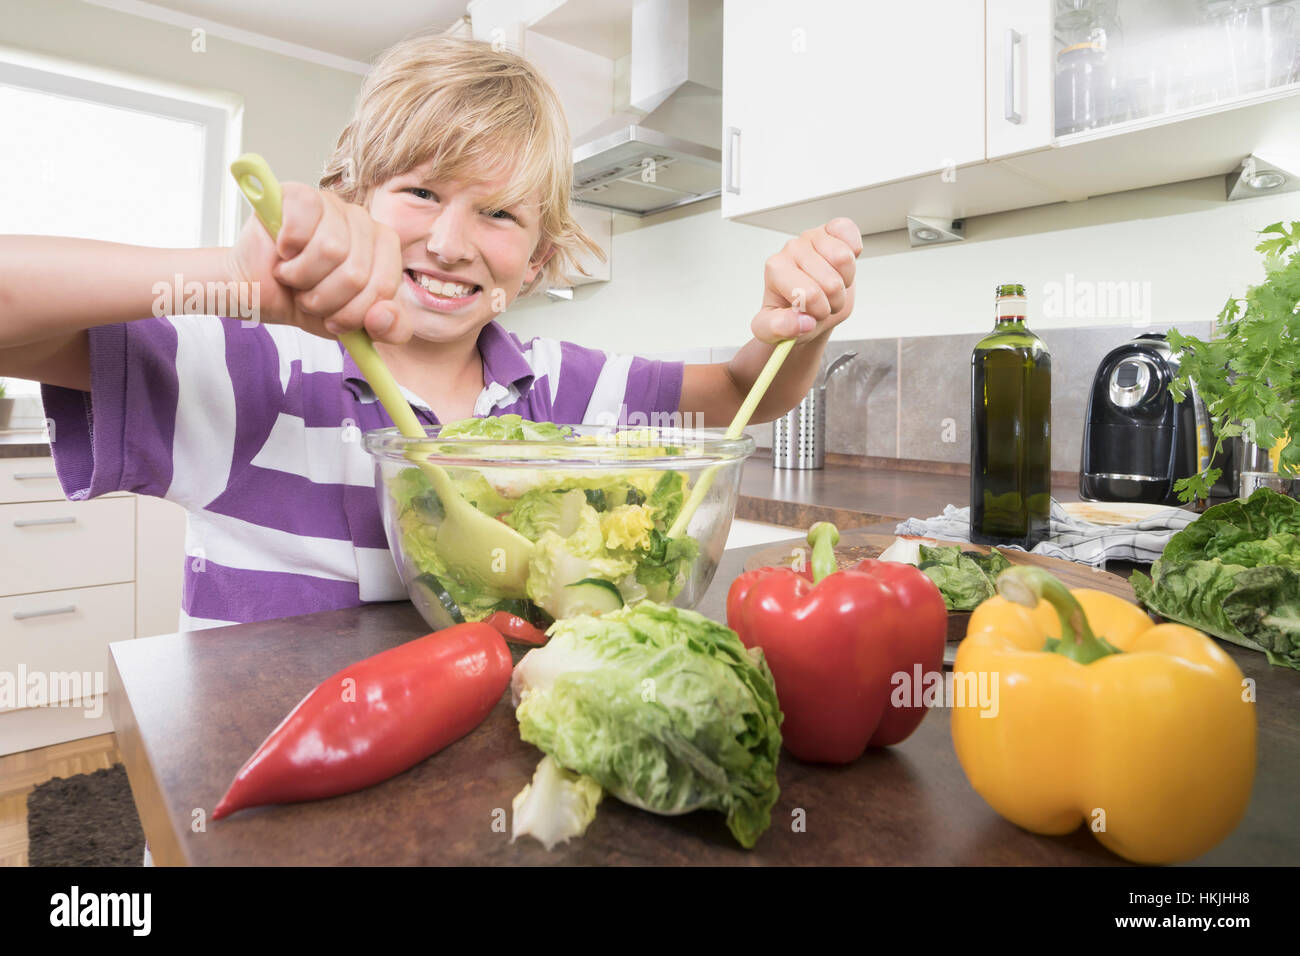 Portrait eines jungen bereitet Salat in Küche, Bayern, Deutschland Stockfoto